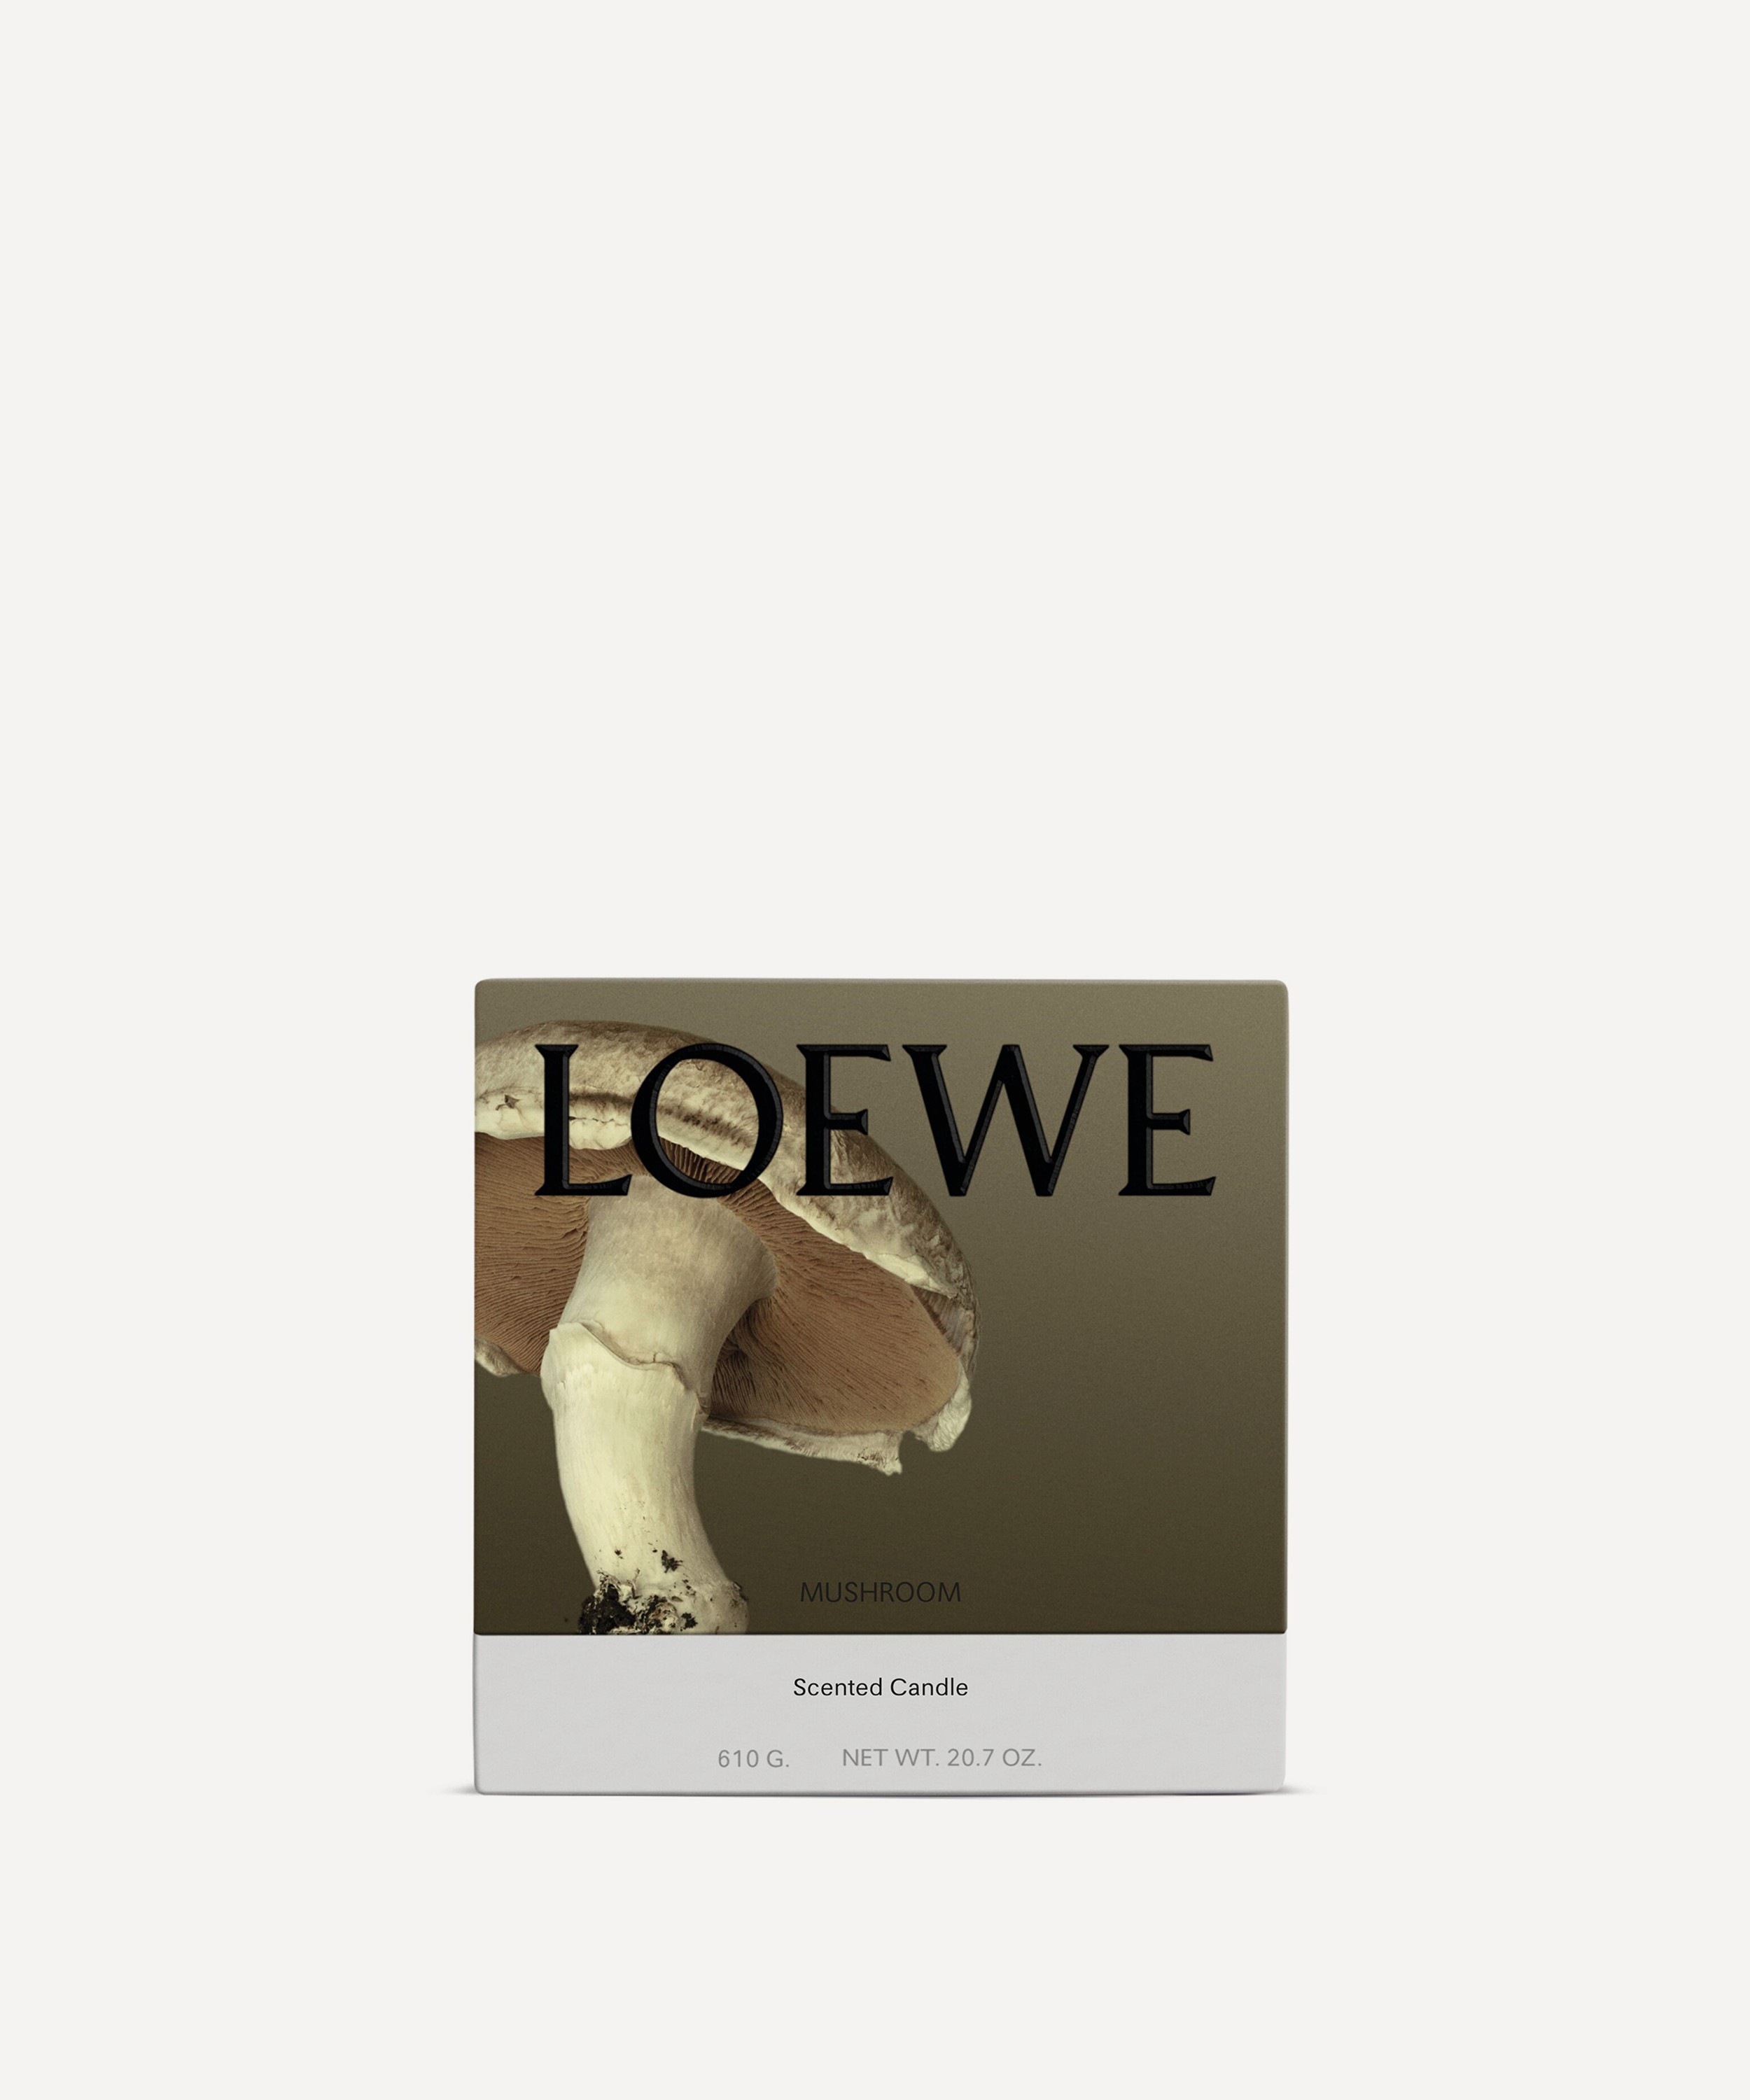 Loewe - Medium Mushroom Candle 610g image number 1